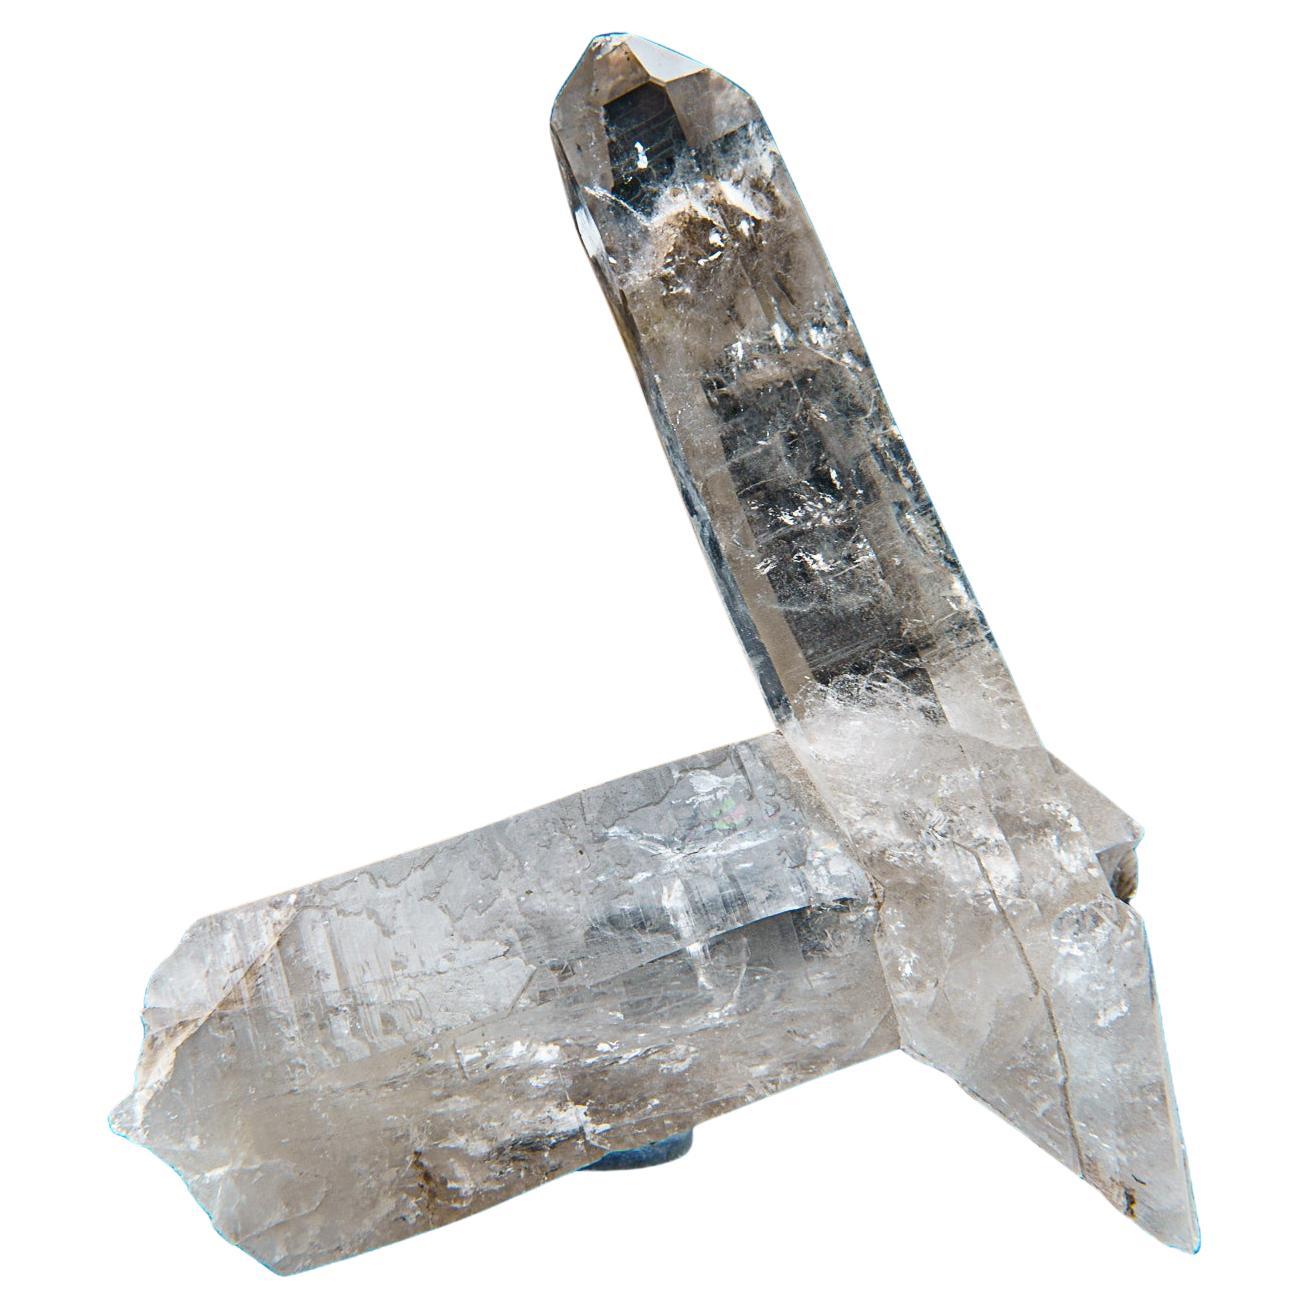 Amas de cristaux ponctuels de quartz brésilien de première qualité. Cet amas de cristaux translucides est composé de cristaux de quartz à terminaison complète avec des faces brillantes et hautement réfléchissantes. 

Le quartz clair favorise la